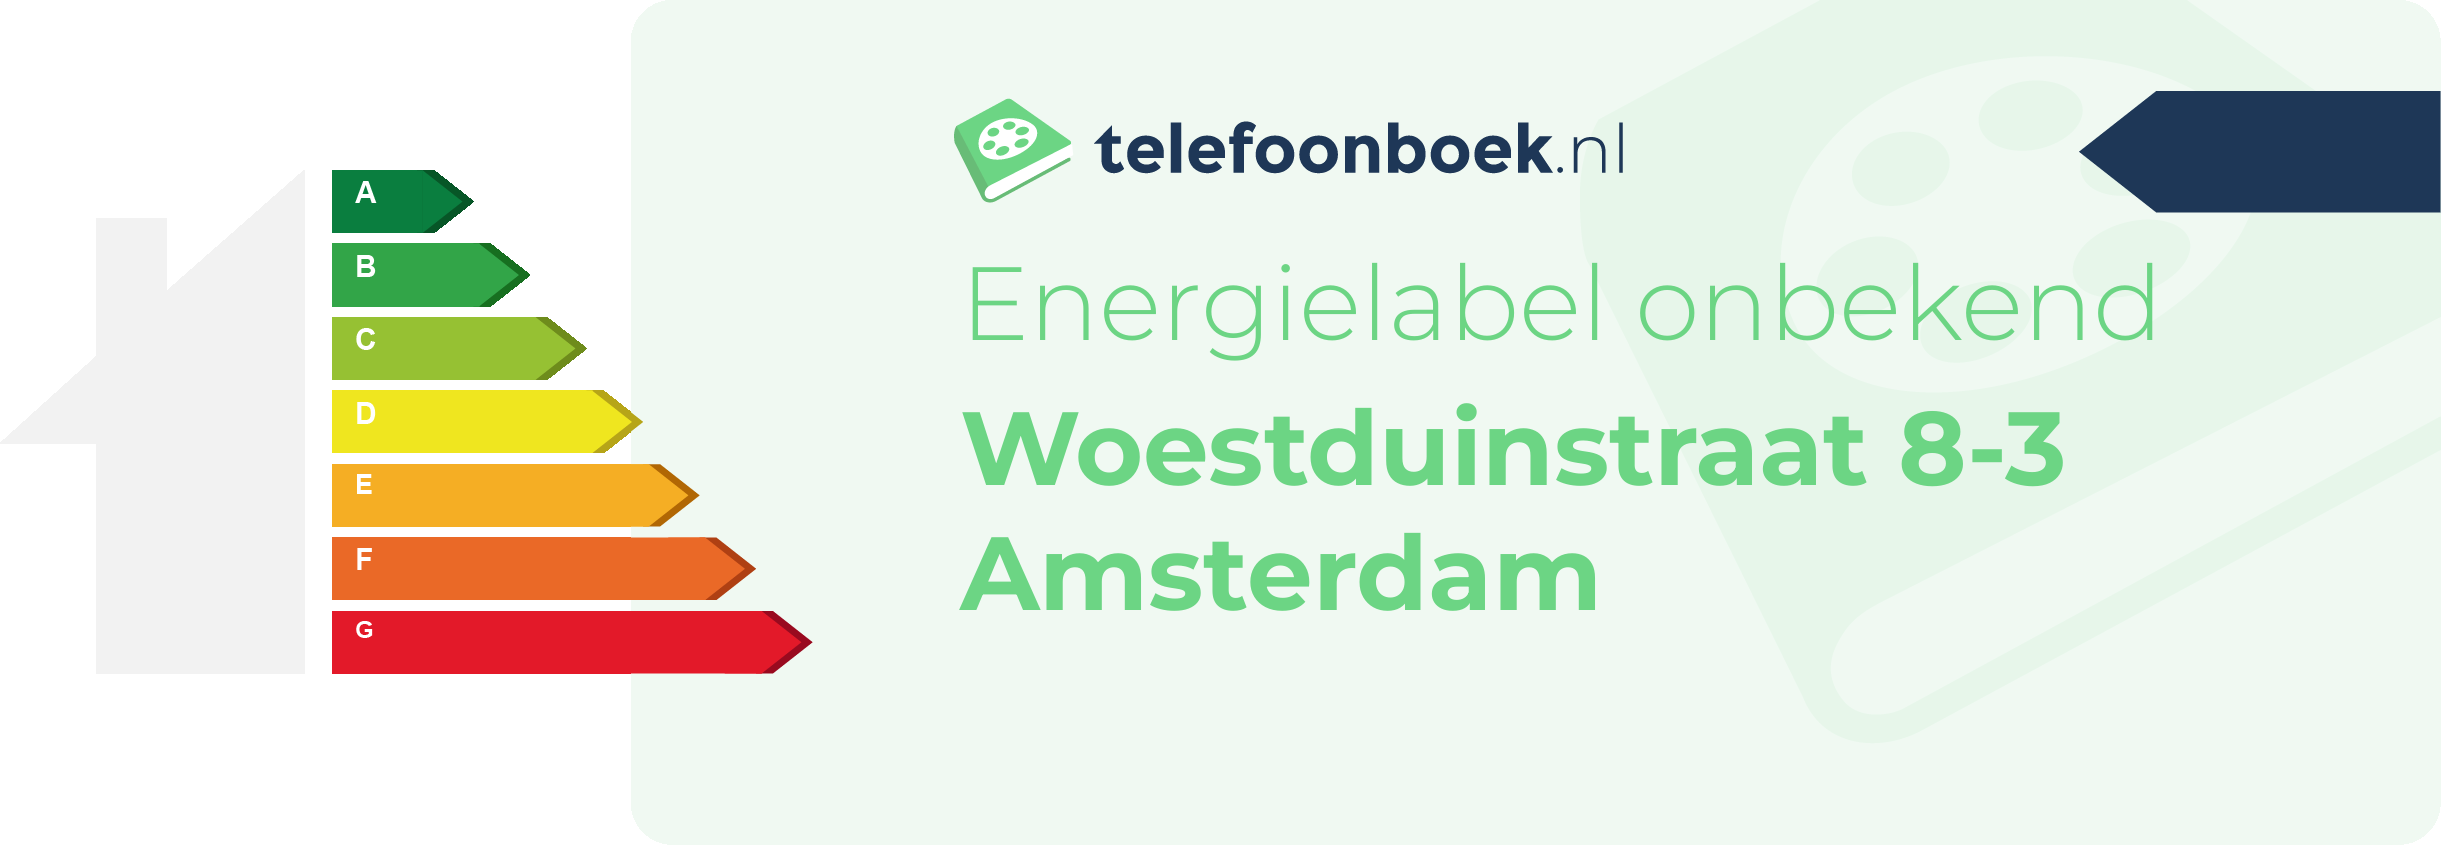 Energielabel Woestduinstraat 8-3 Amsterdam